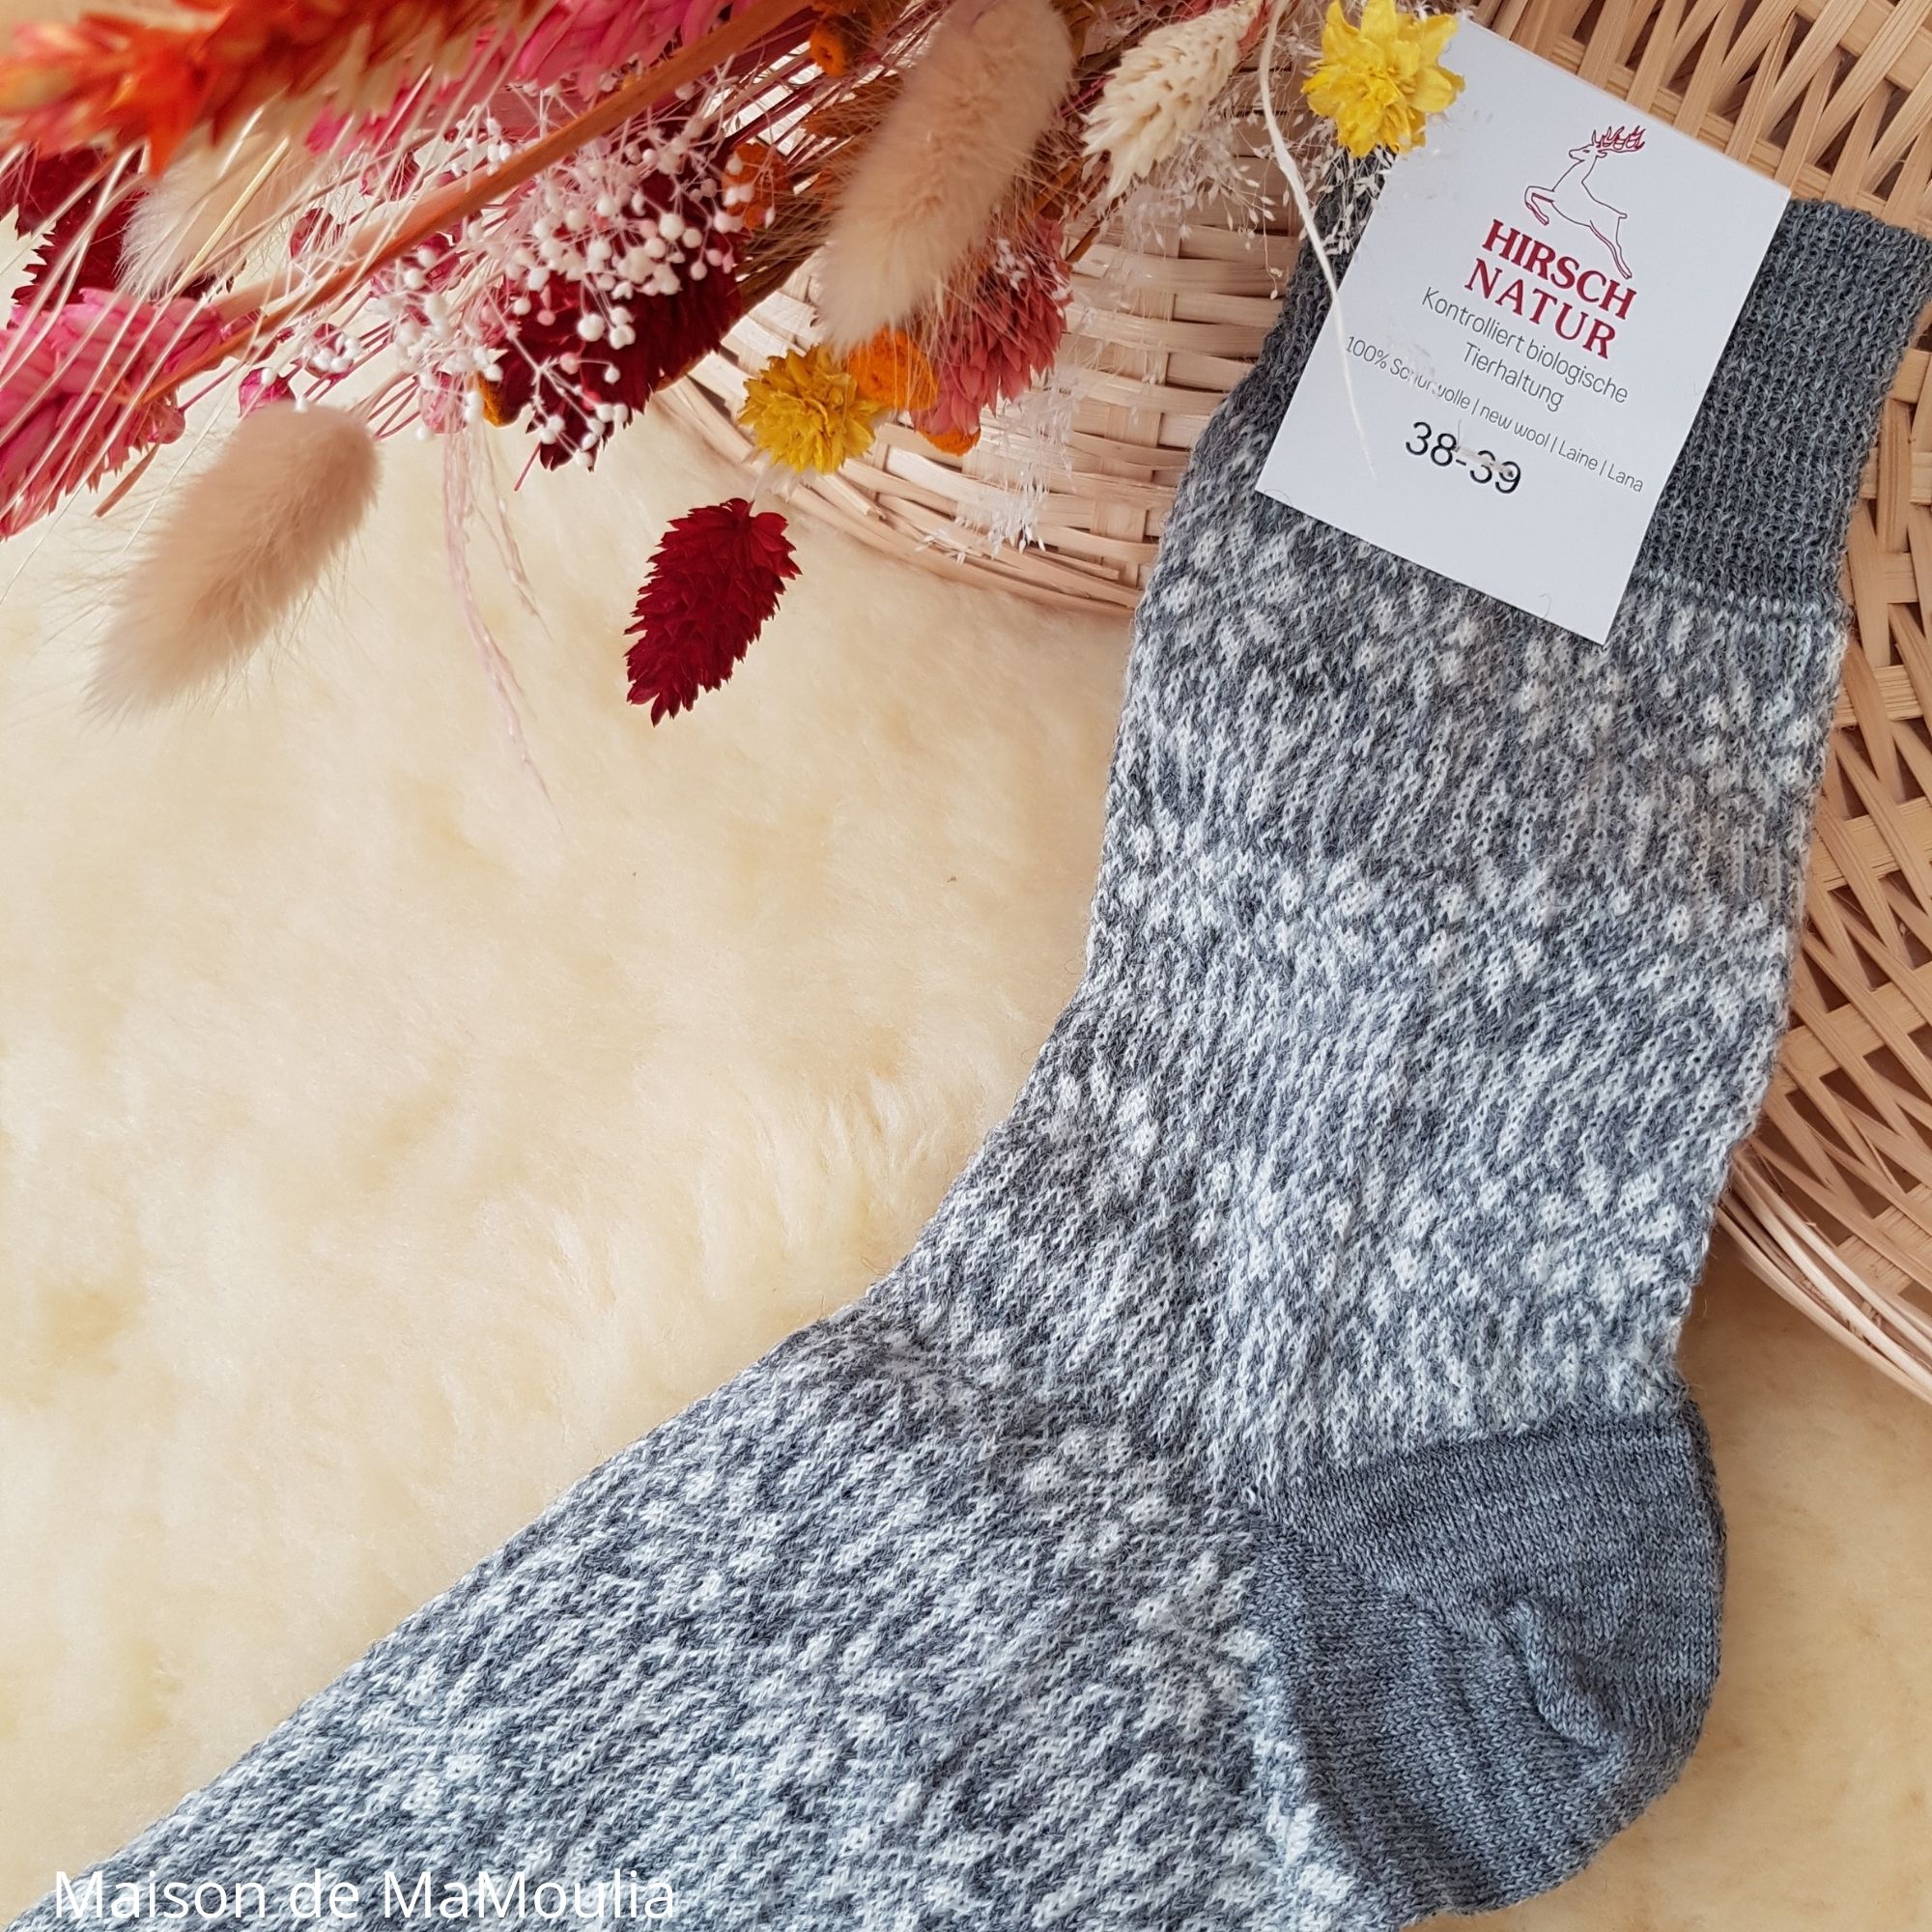 156-chaussettes-pure-laine-bio-ecologique-hirsch-natur-maison-de-mamoulia-norvegienne-adulte-femme-gris-fine